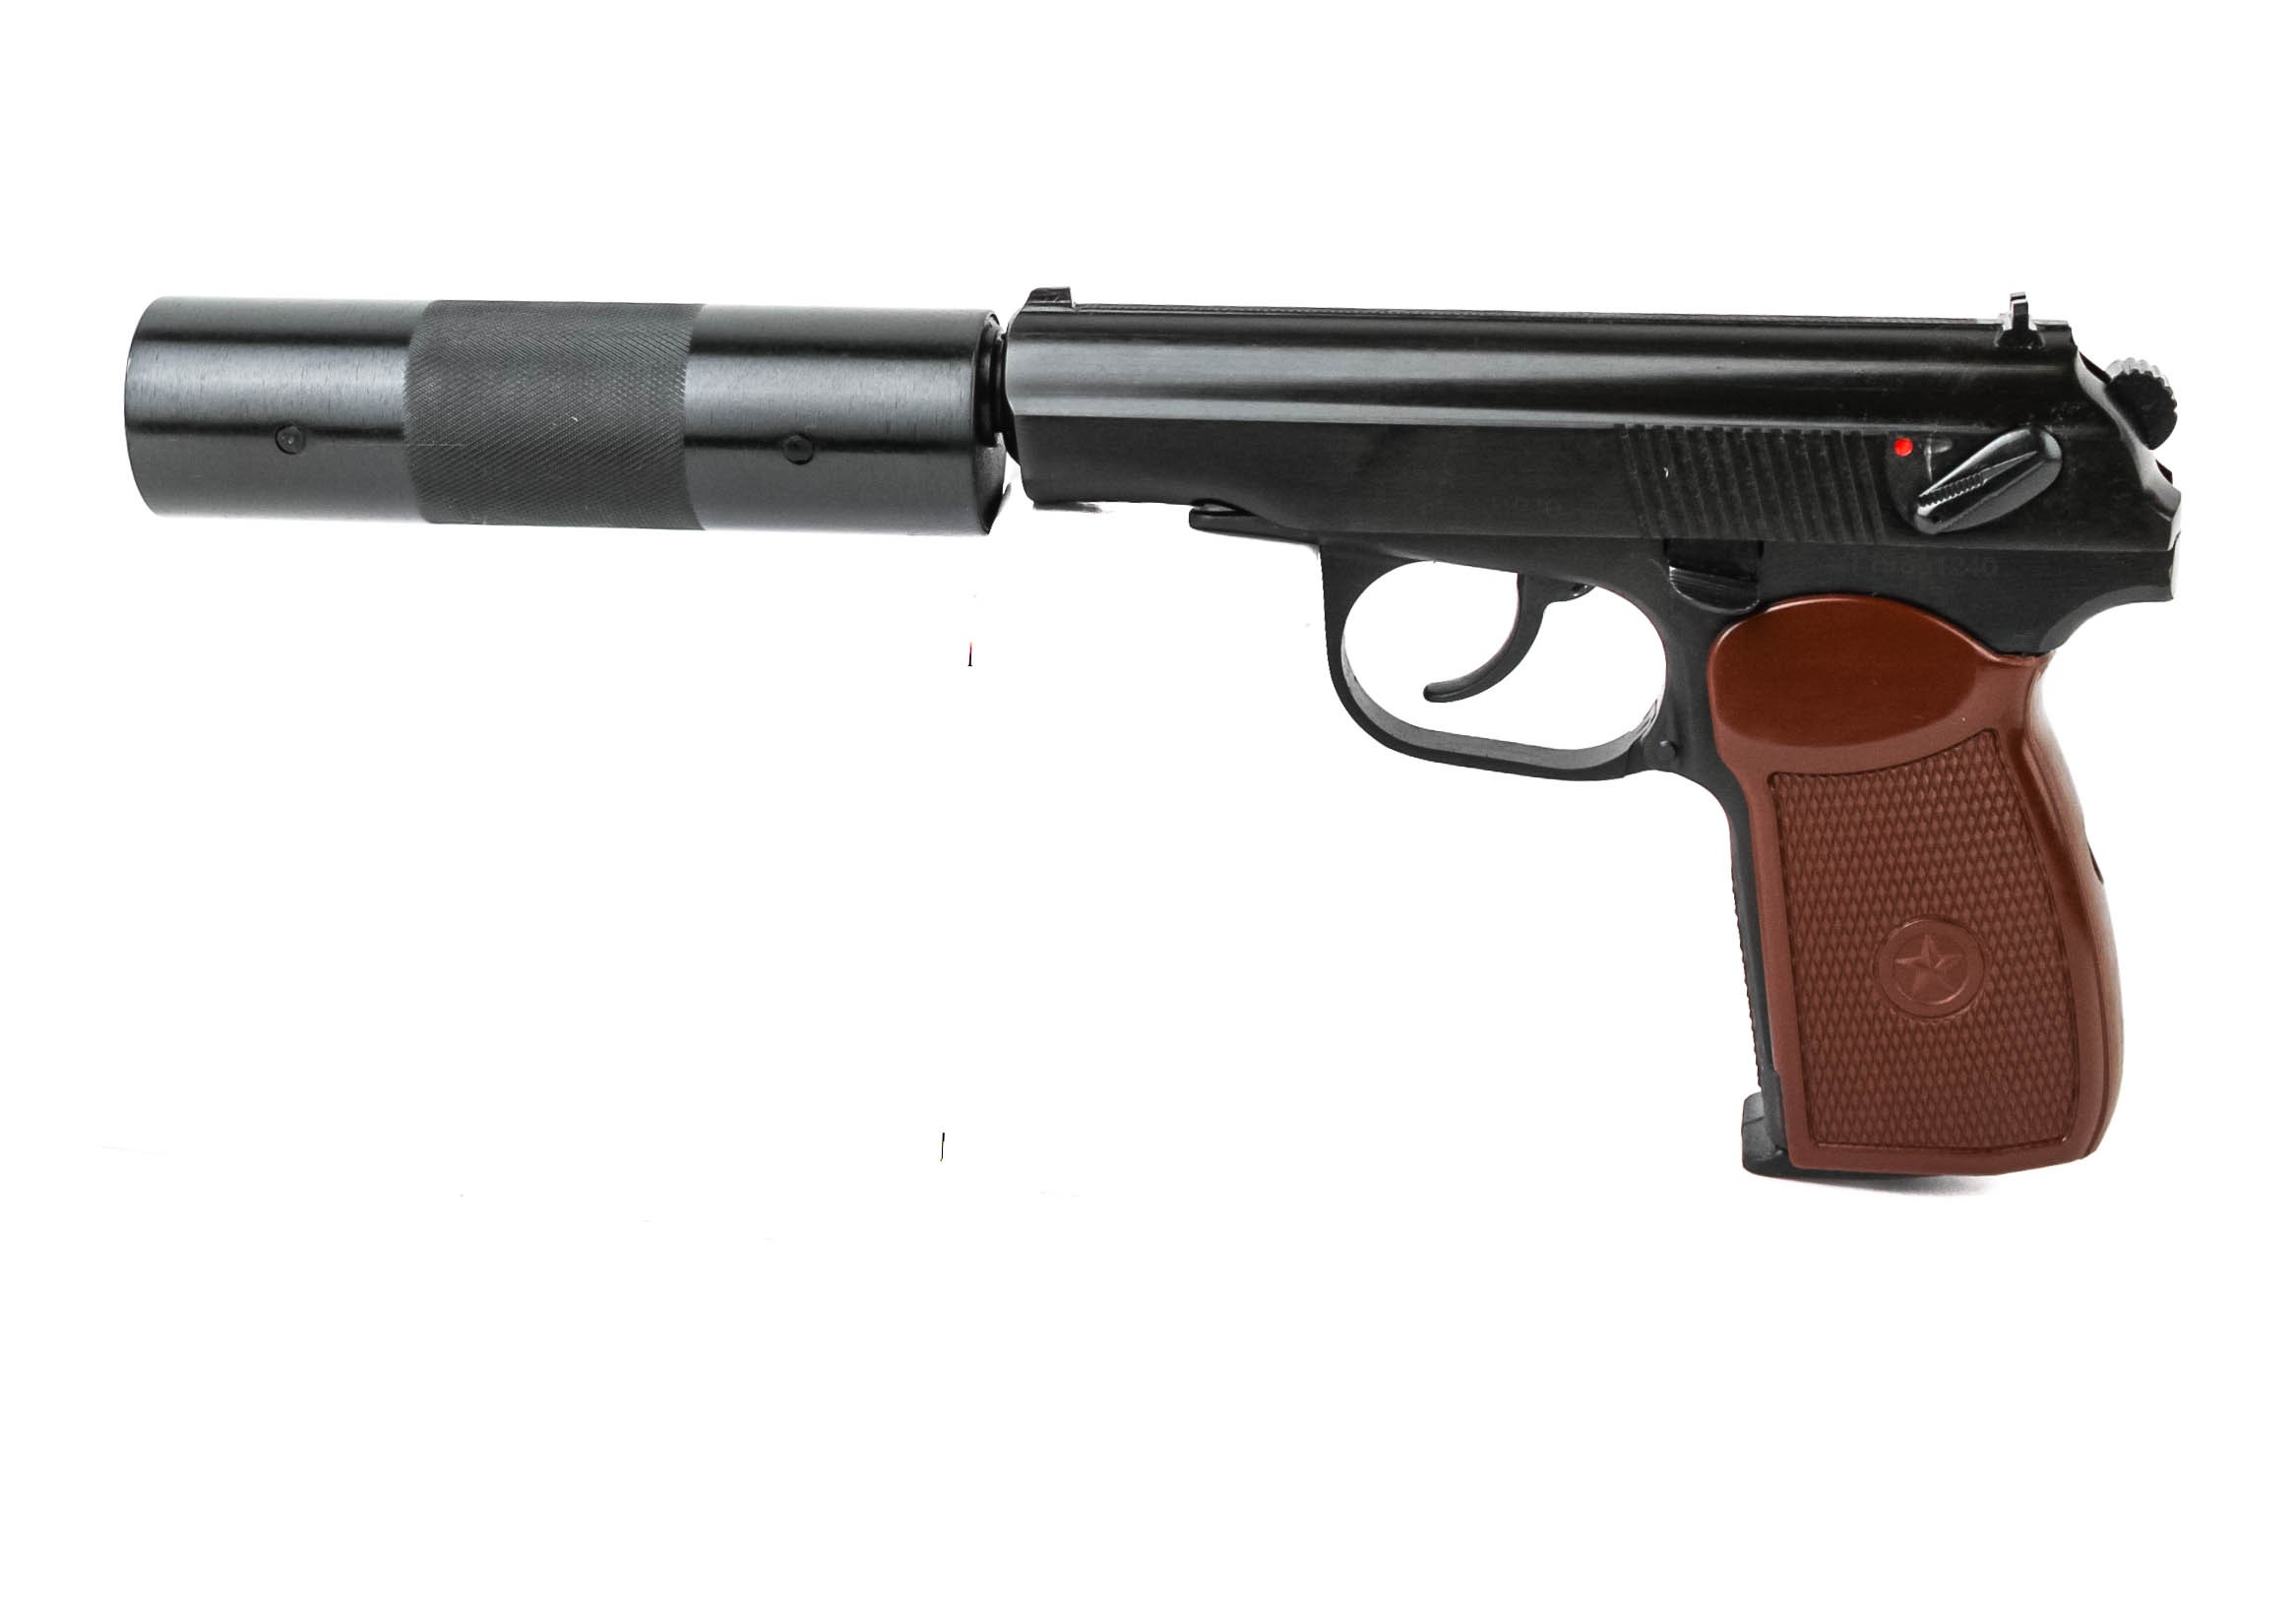 Пистолет Baikal МР 654 К 22 фальшглушитель обновленная ручка - фото 1